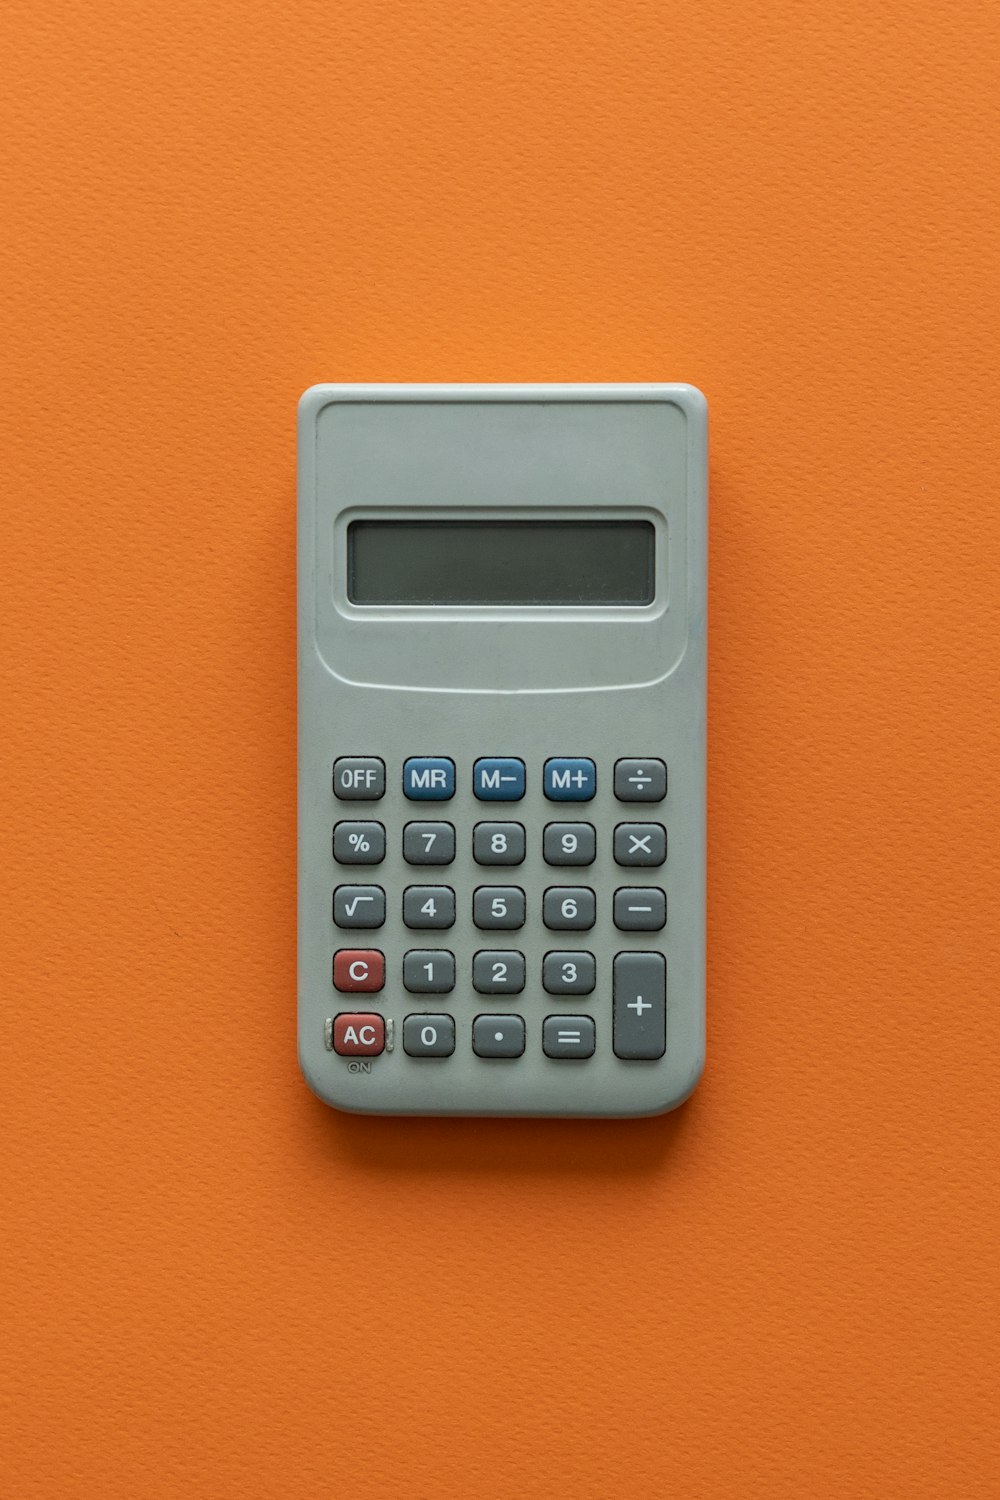 a calculator on a table